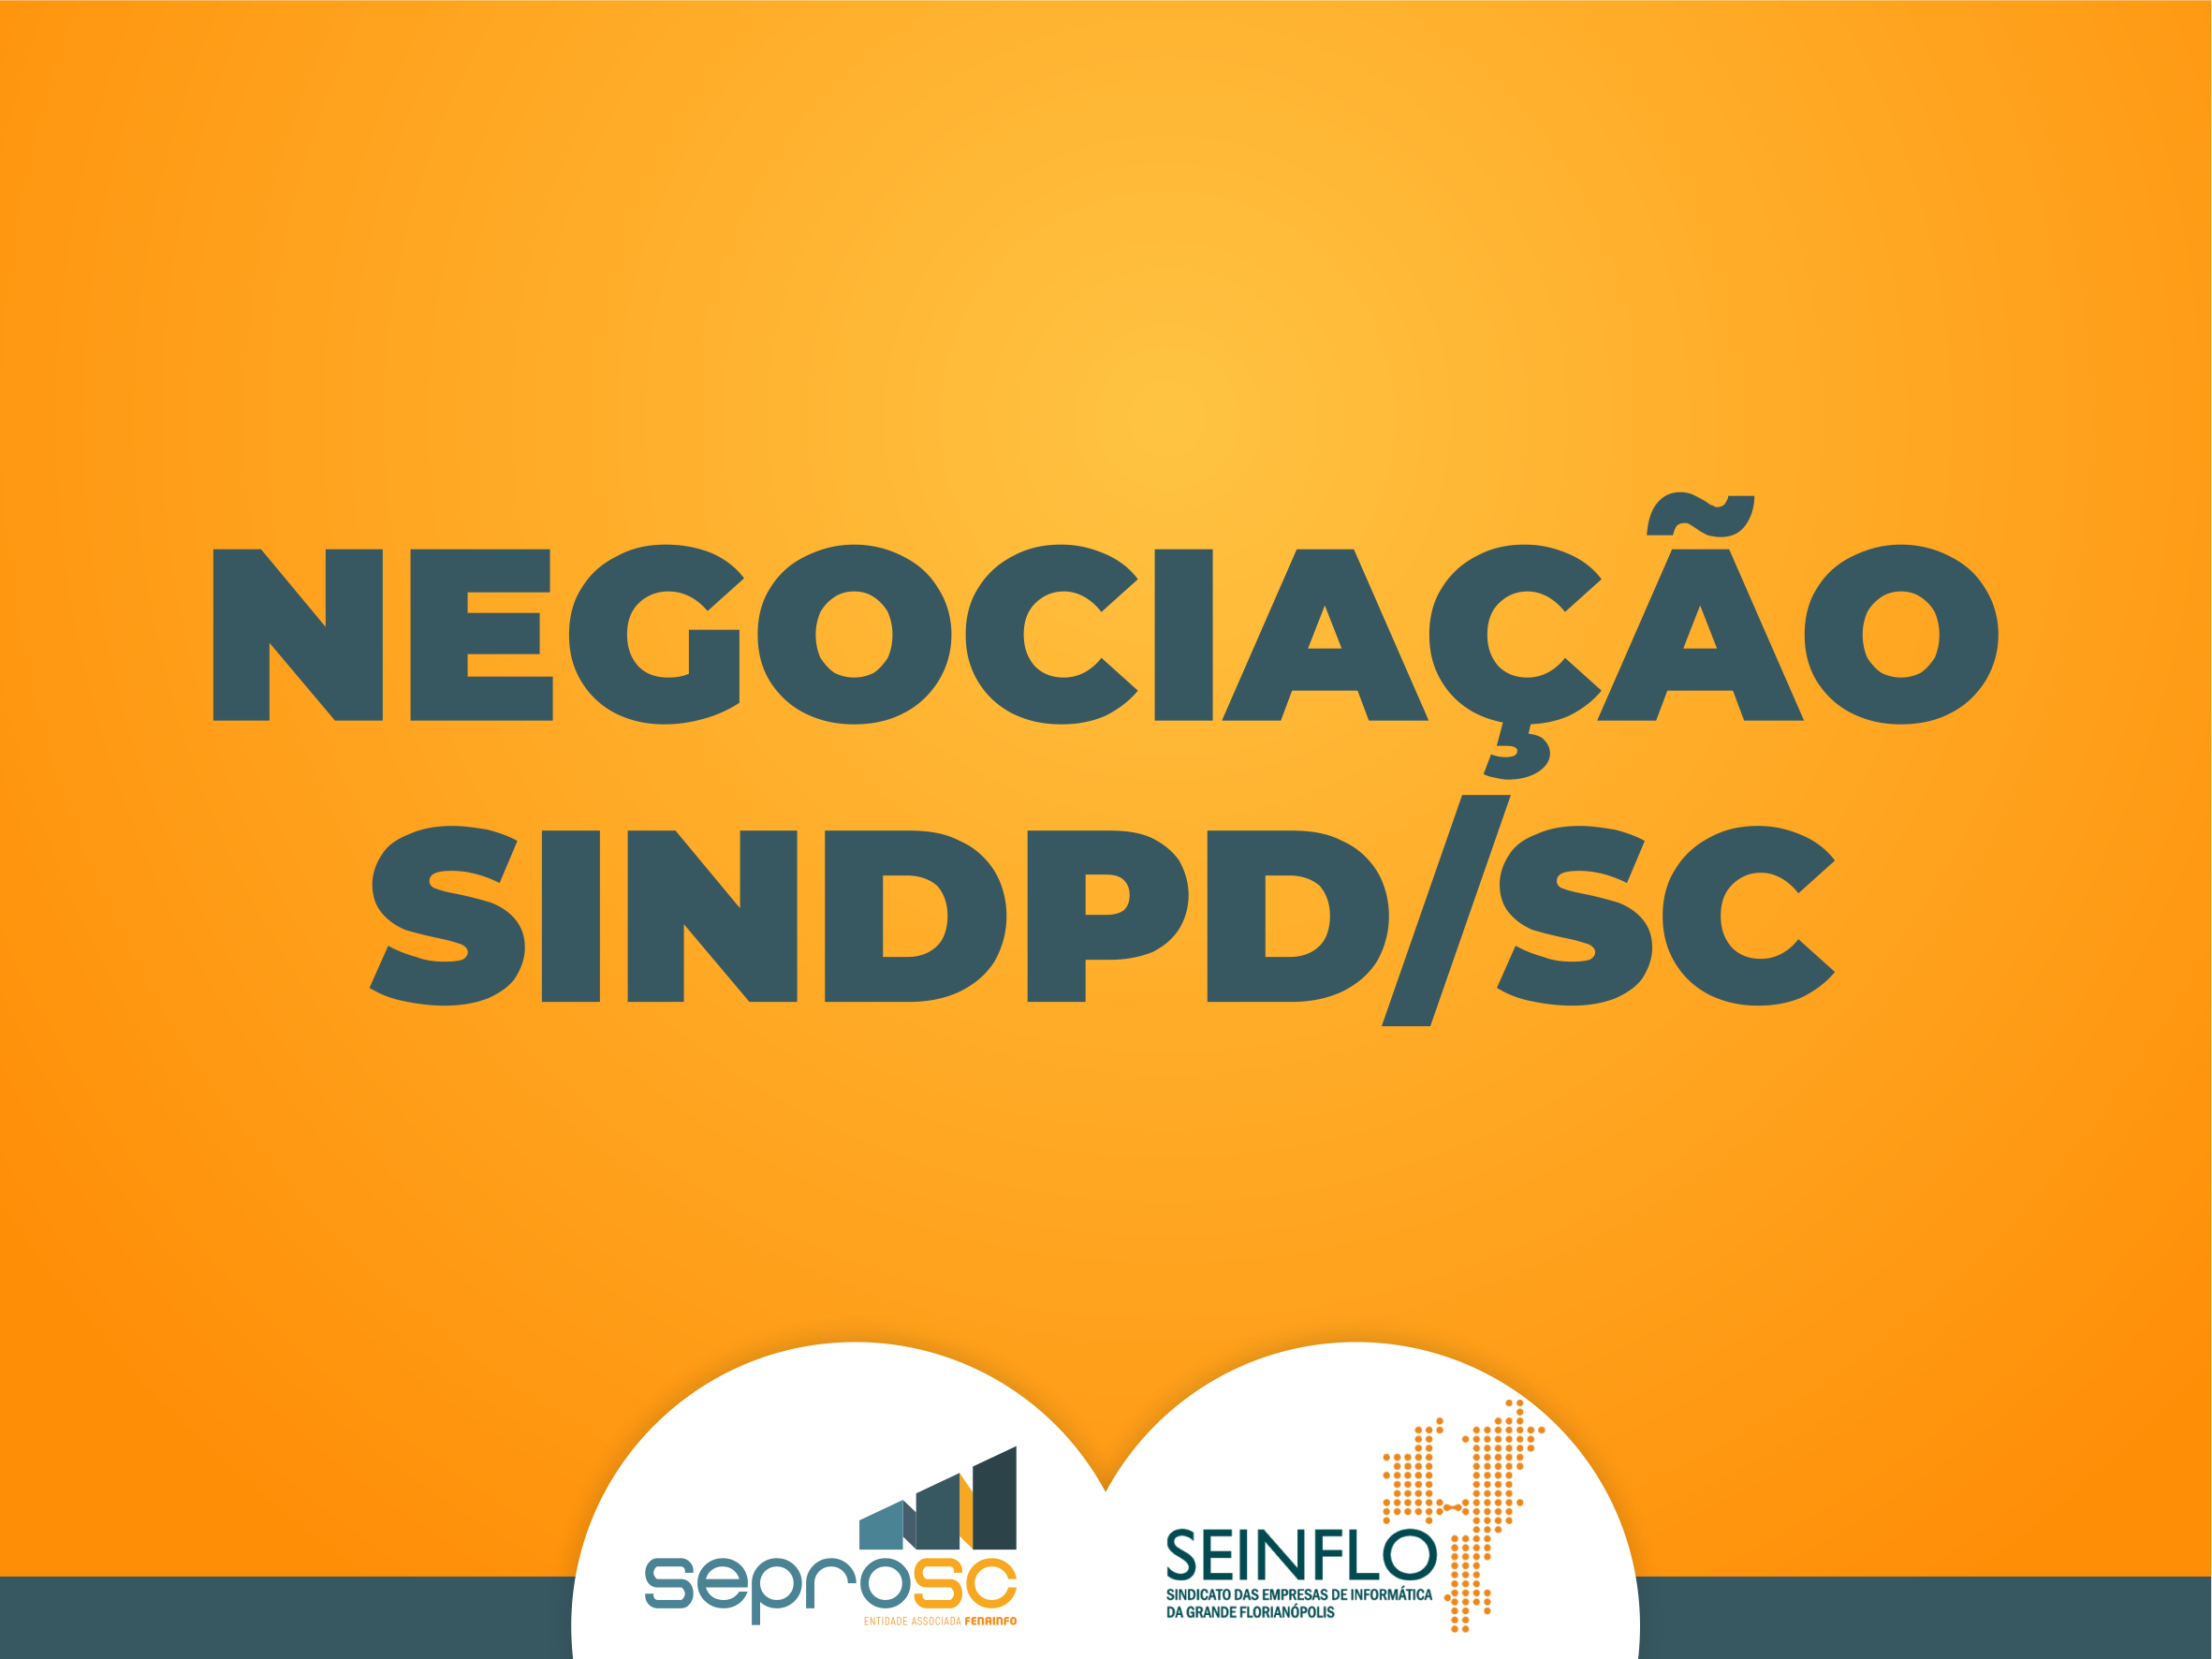 SEINFLO e SEPROSC vêm negociando com o SINDPD/SC